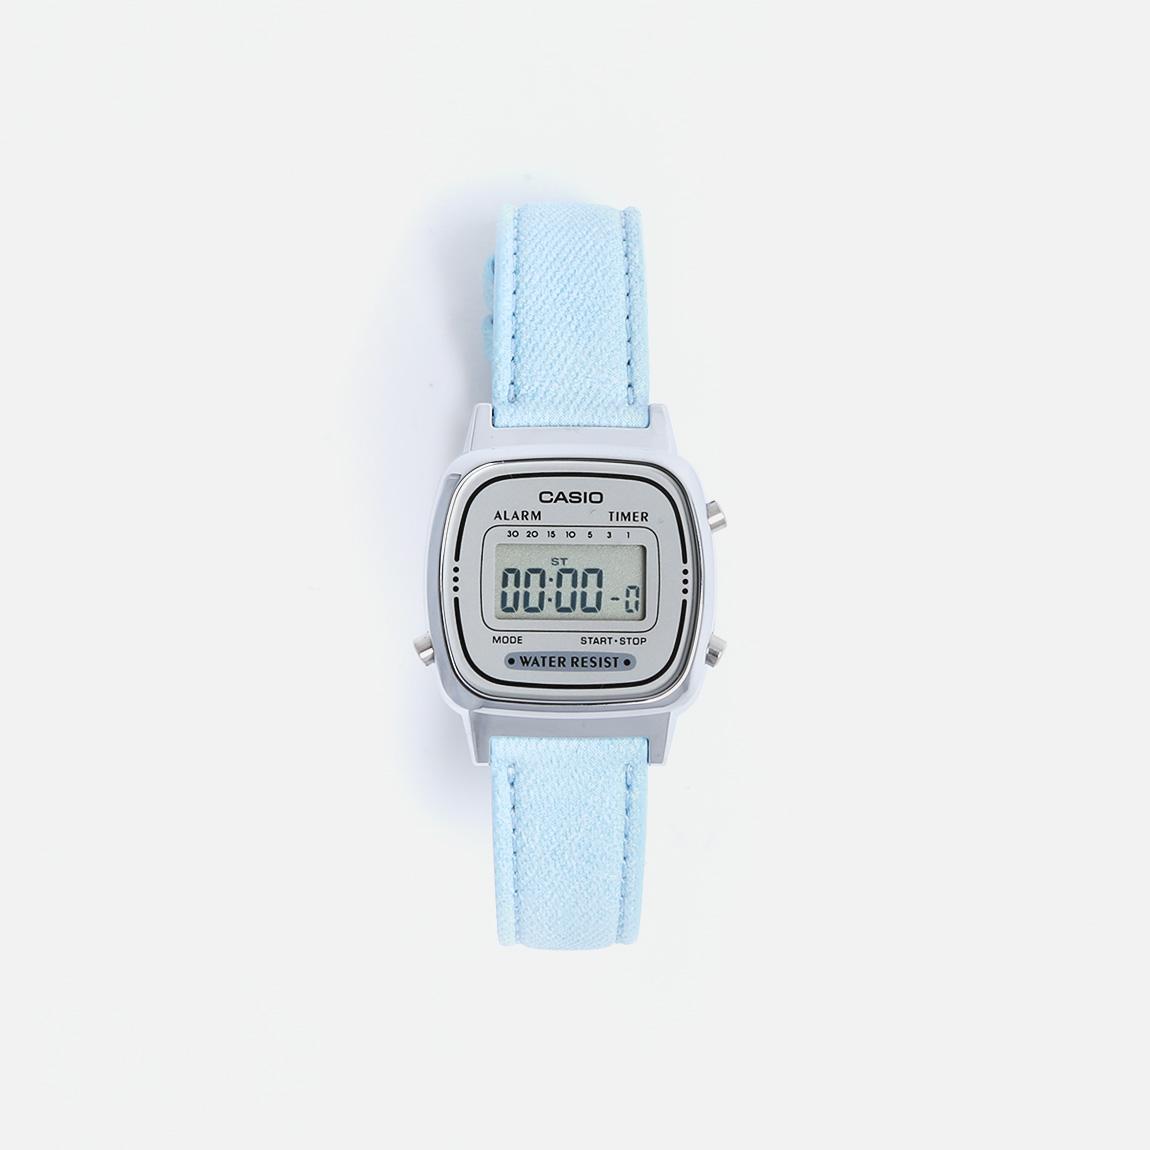 WRIST WATCHES DIGITAL - LIGHT BLUE Casio Watches | Superbalist.com